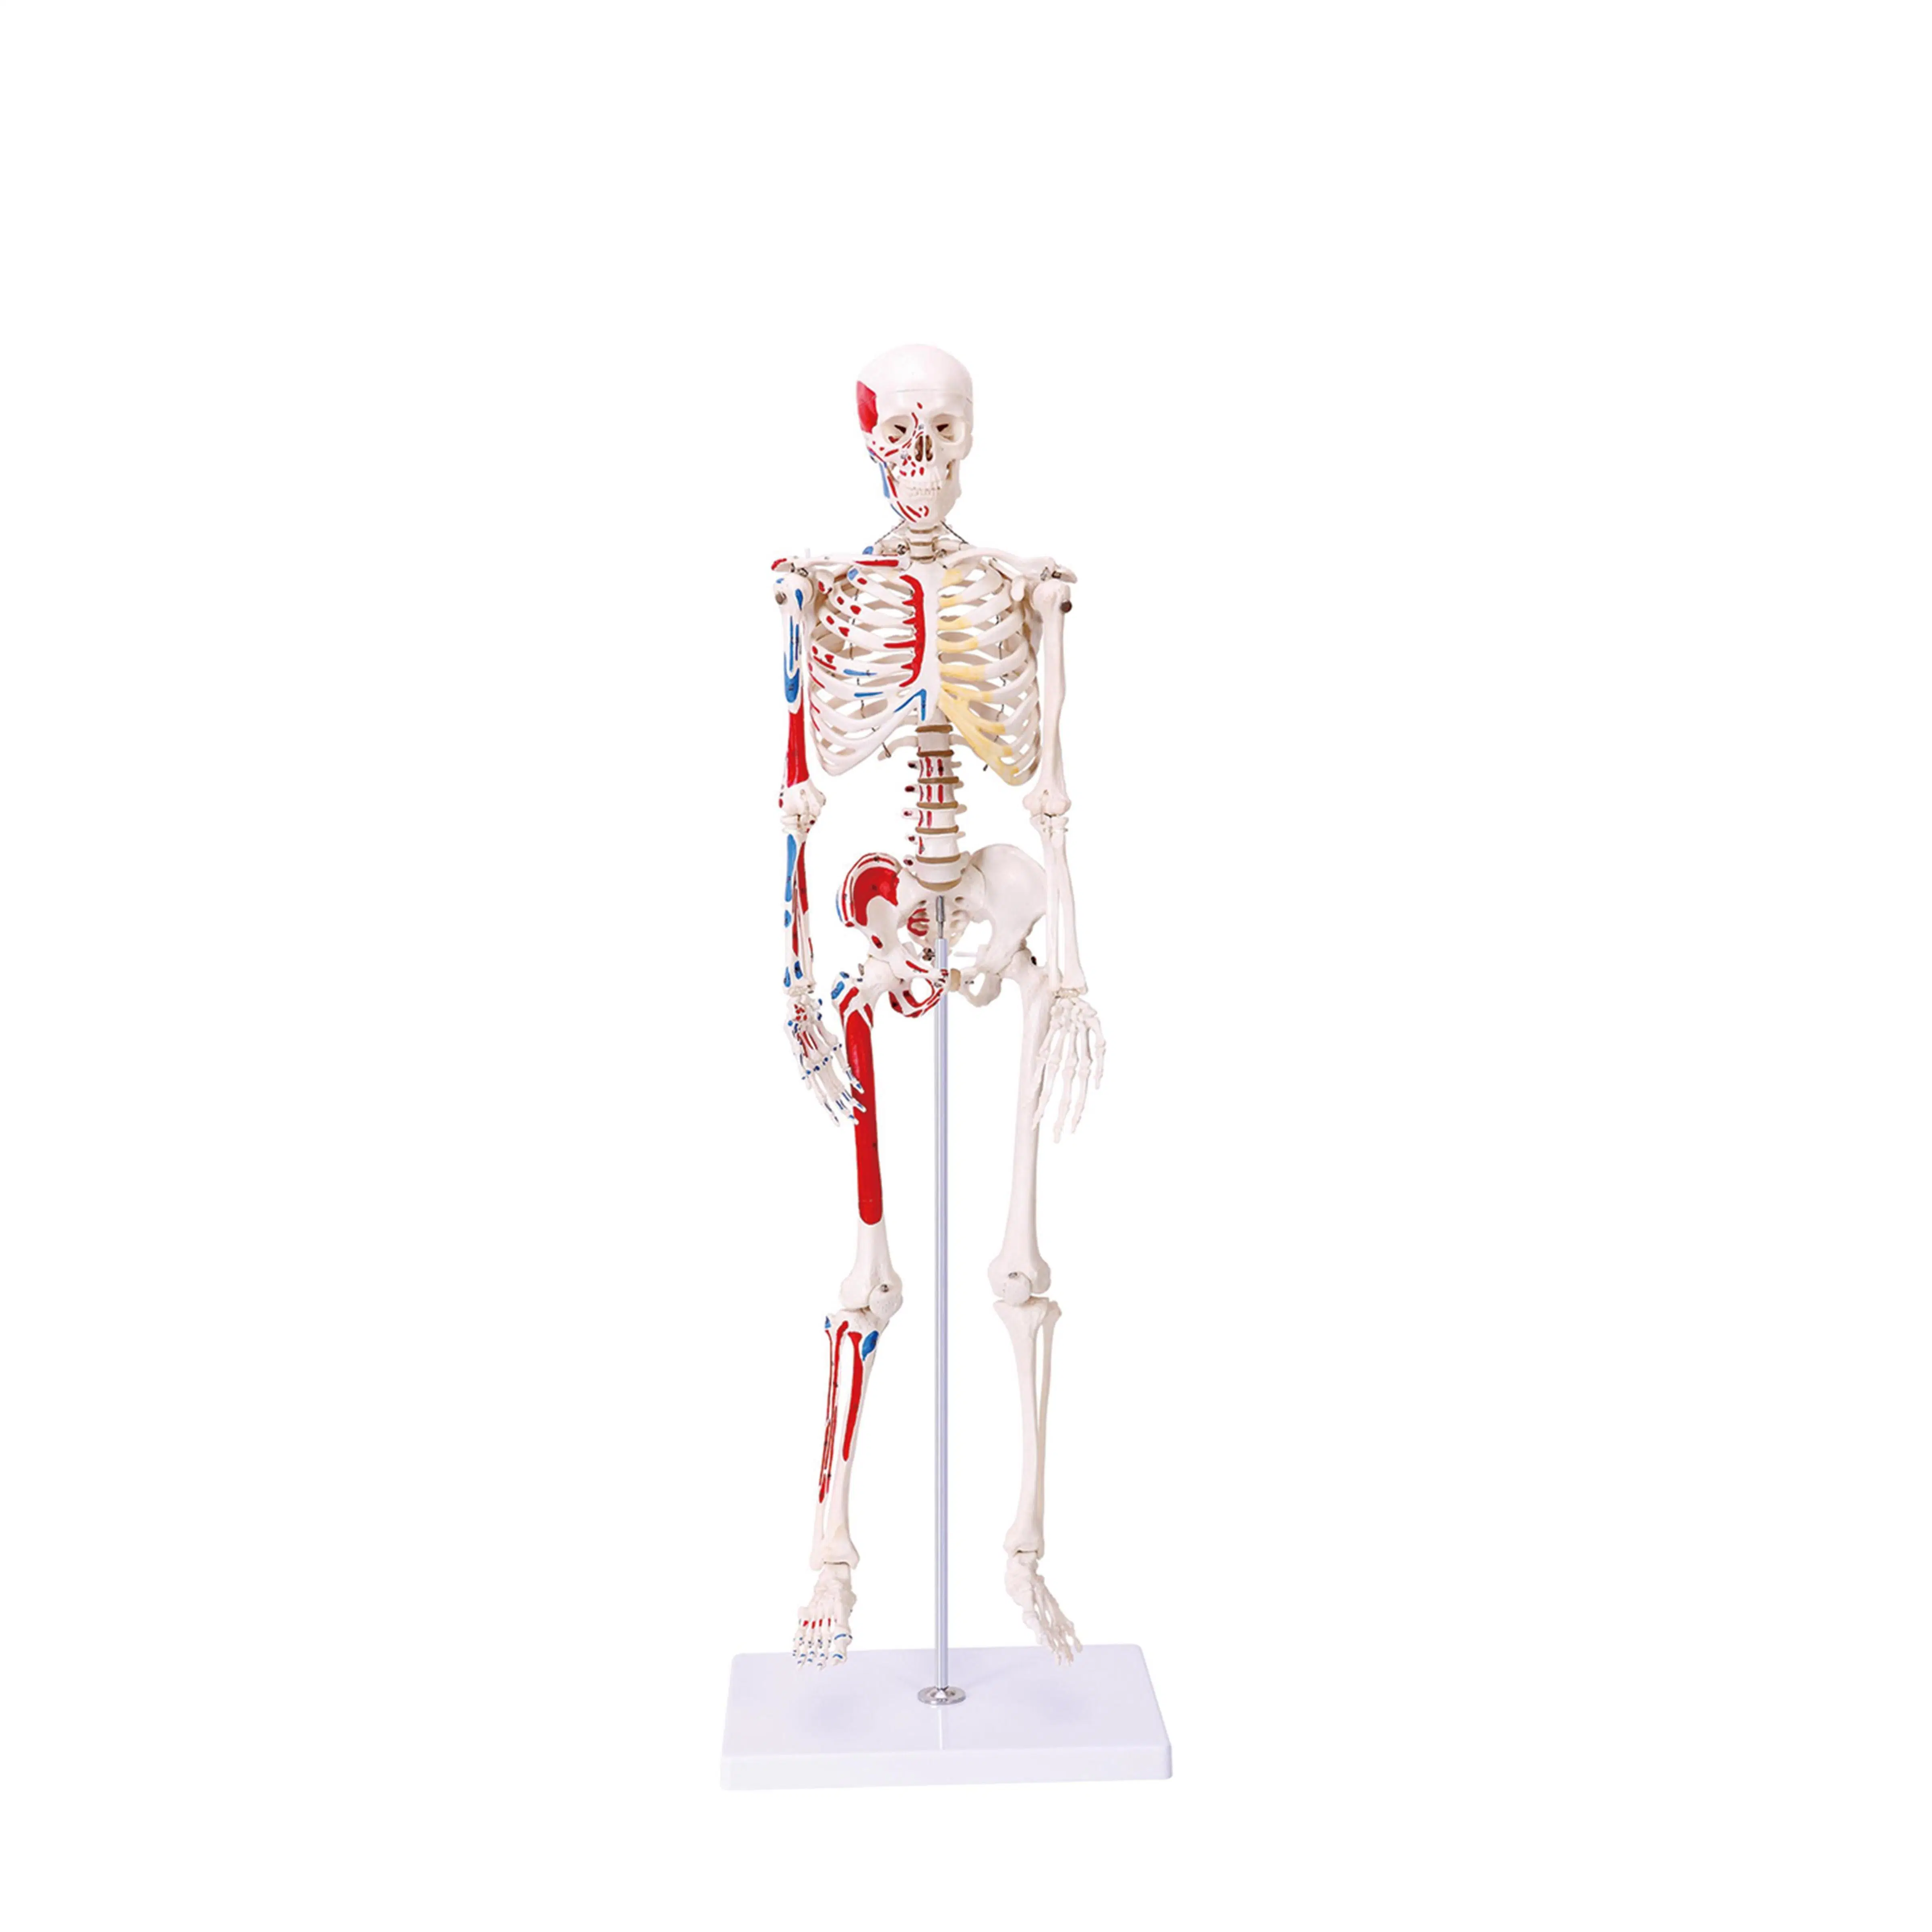 نماذج التدريس في المختبر نماذج هيكل عظمي عضلي بشرية بحجم 170 سم من PVC